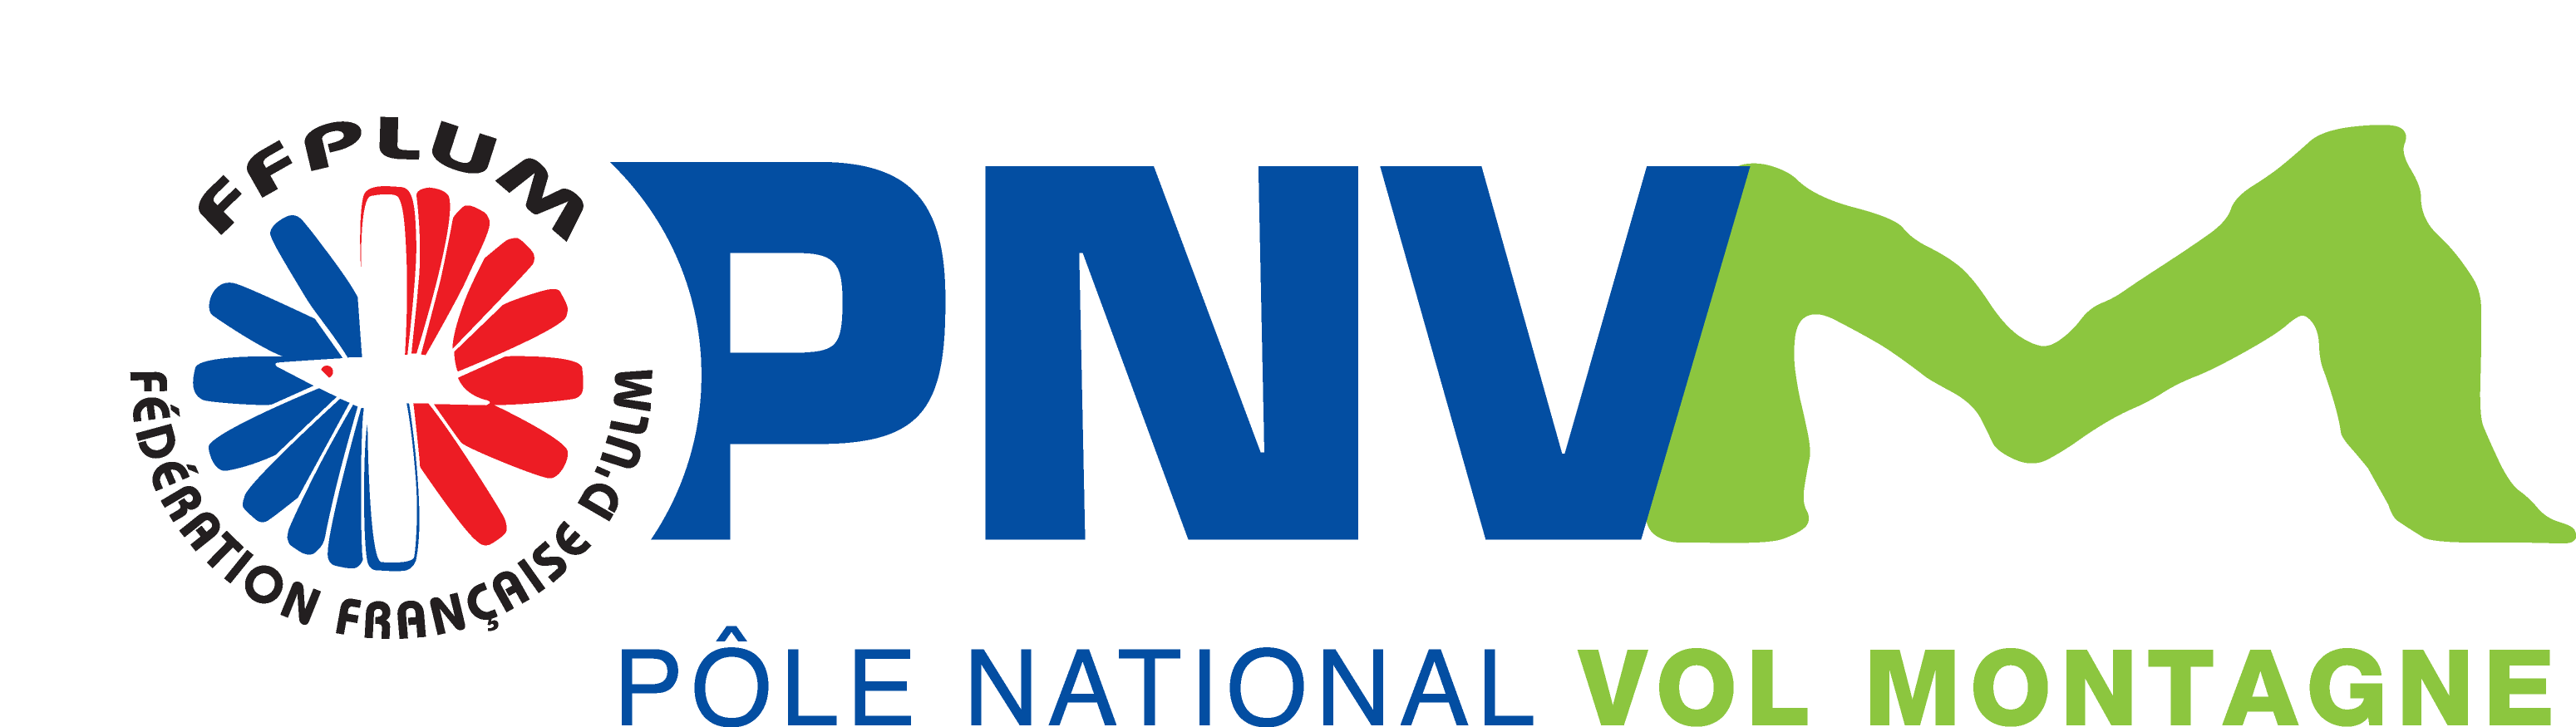 PNVM logo